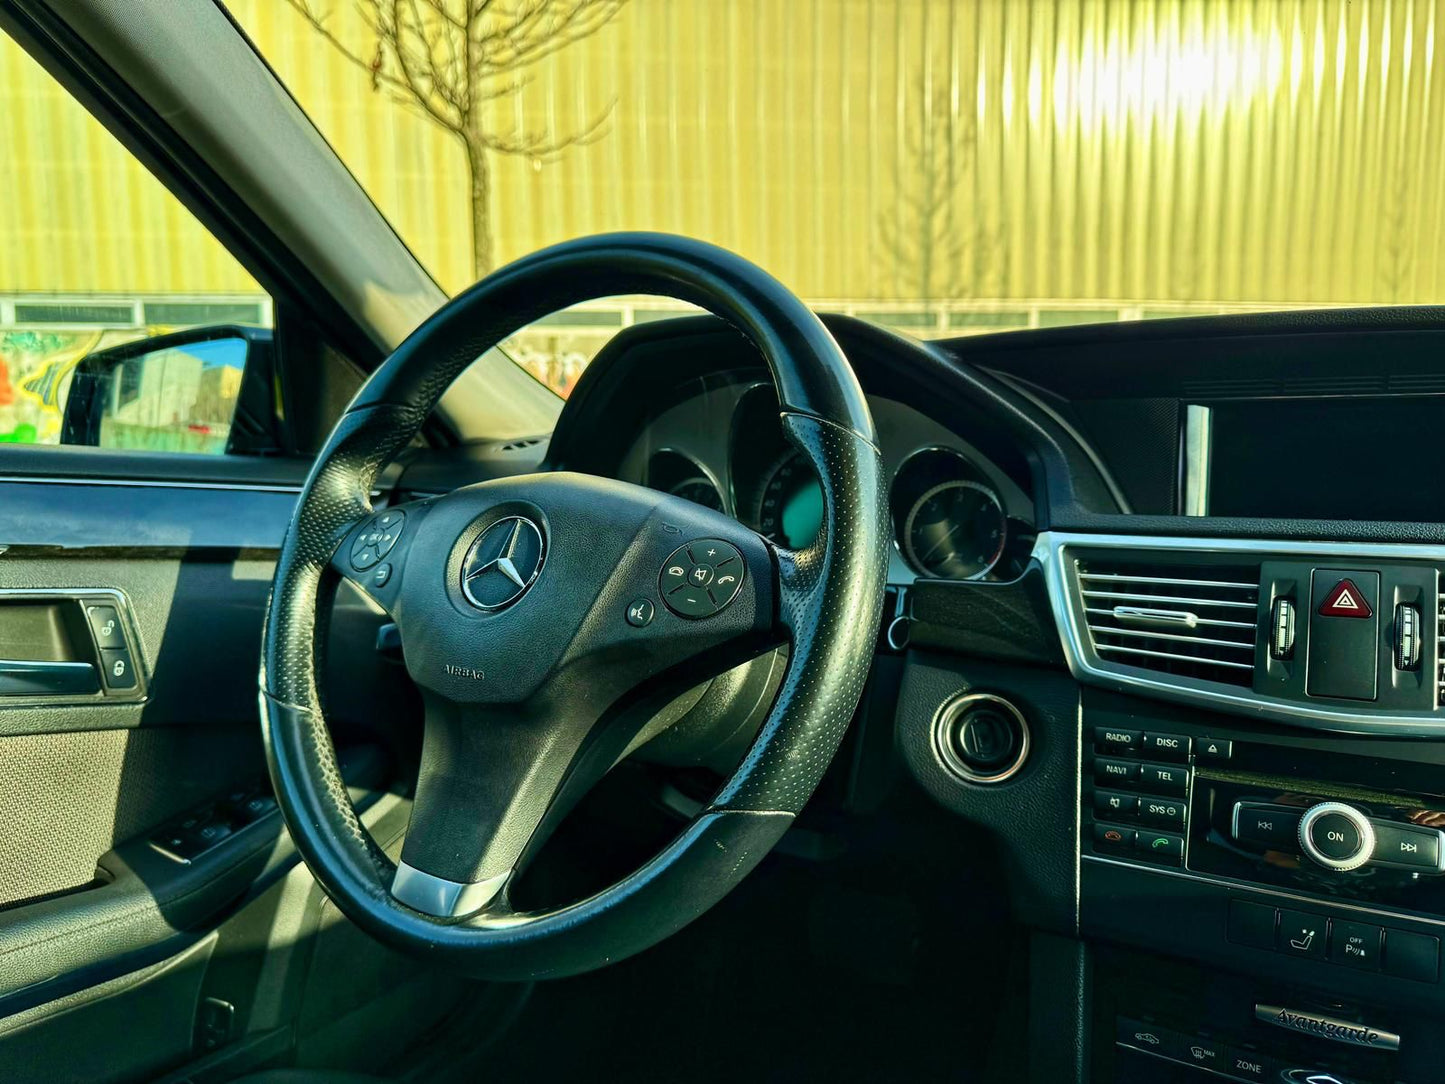 Mercedes E220 CDI Avantgarde